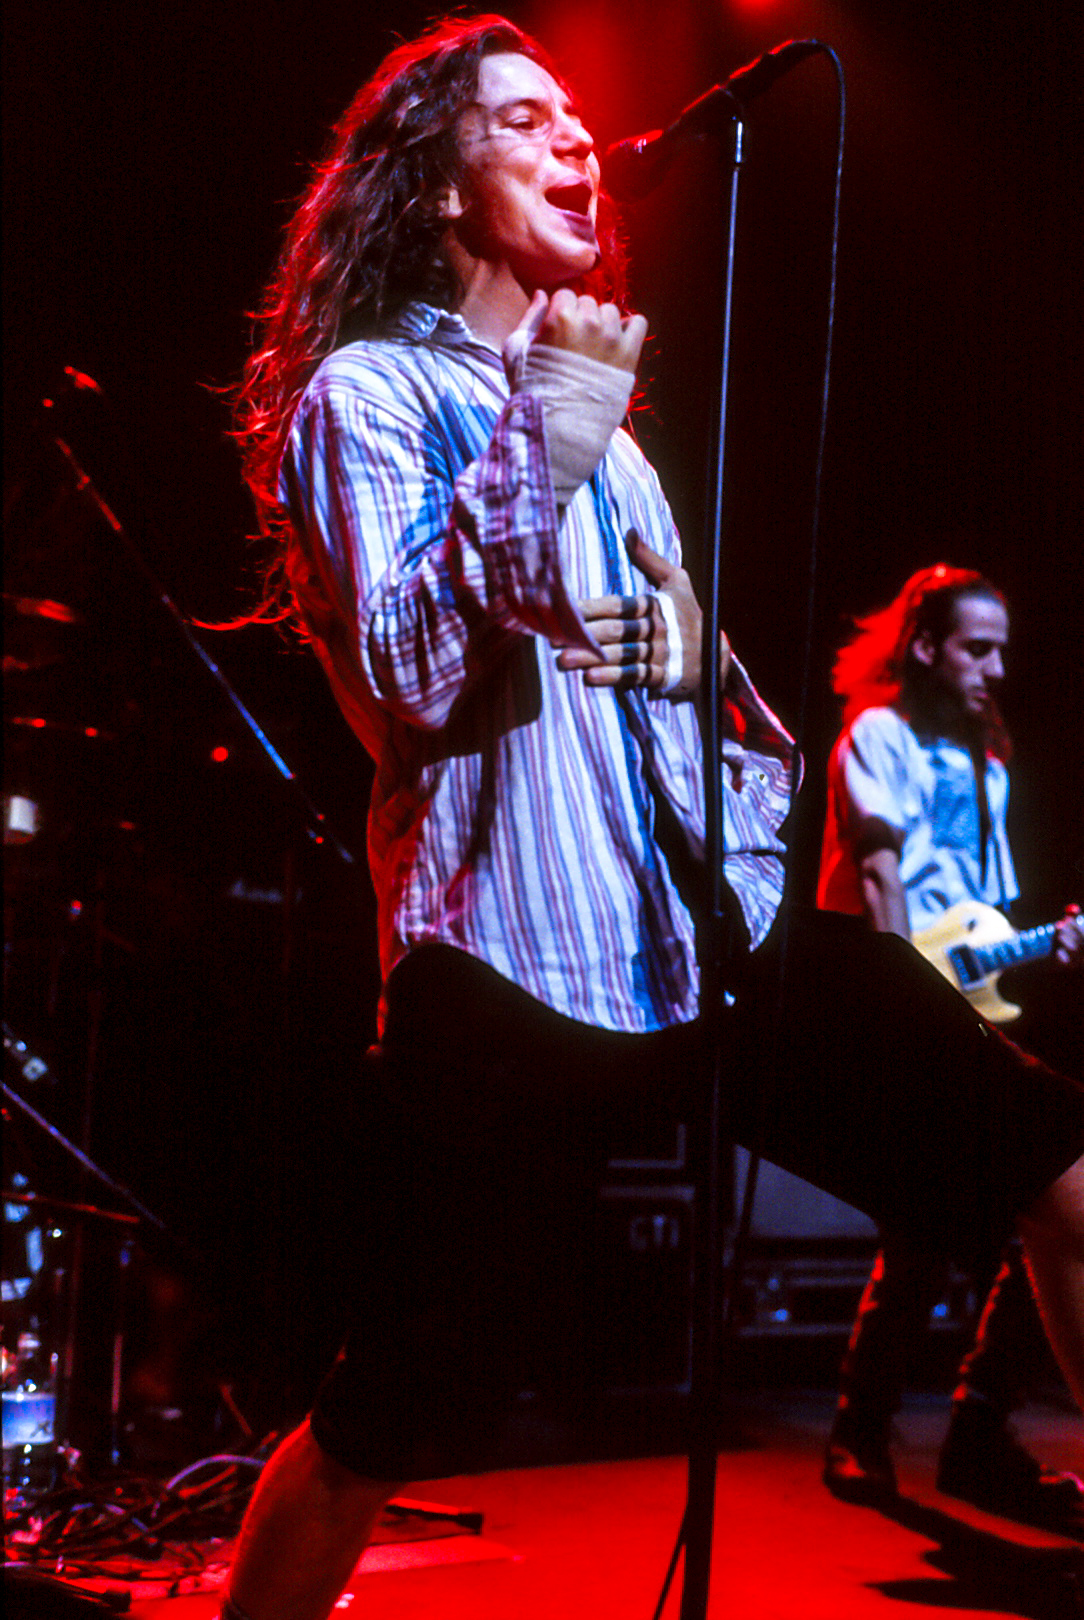 Eddie Vedder/Pearl Jam - 1991